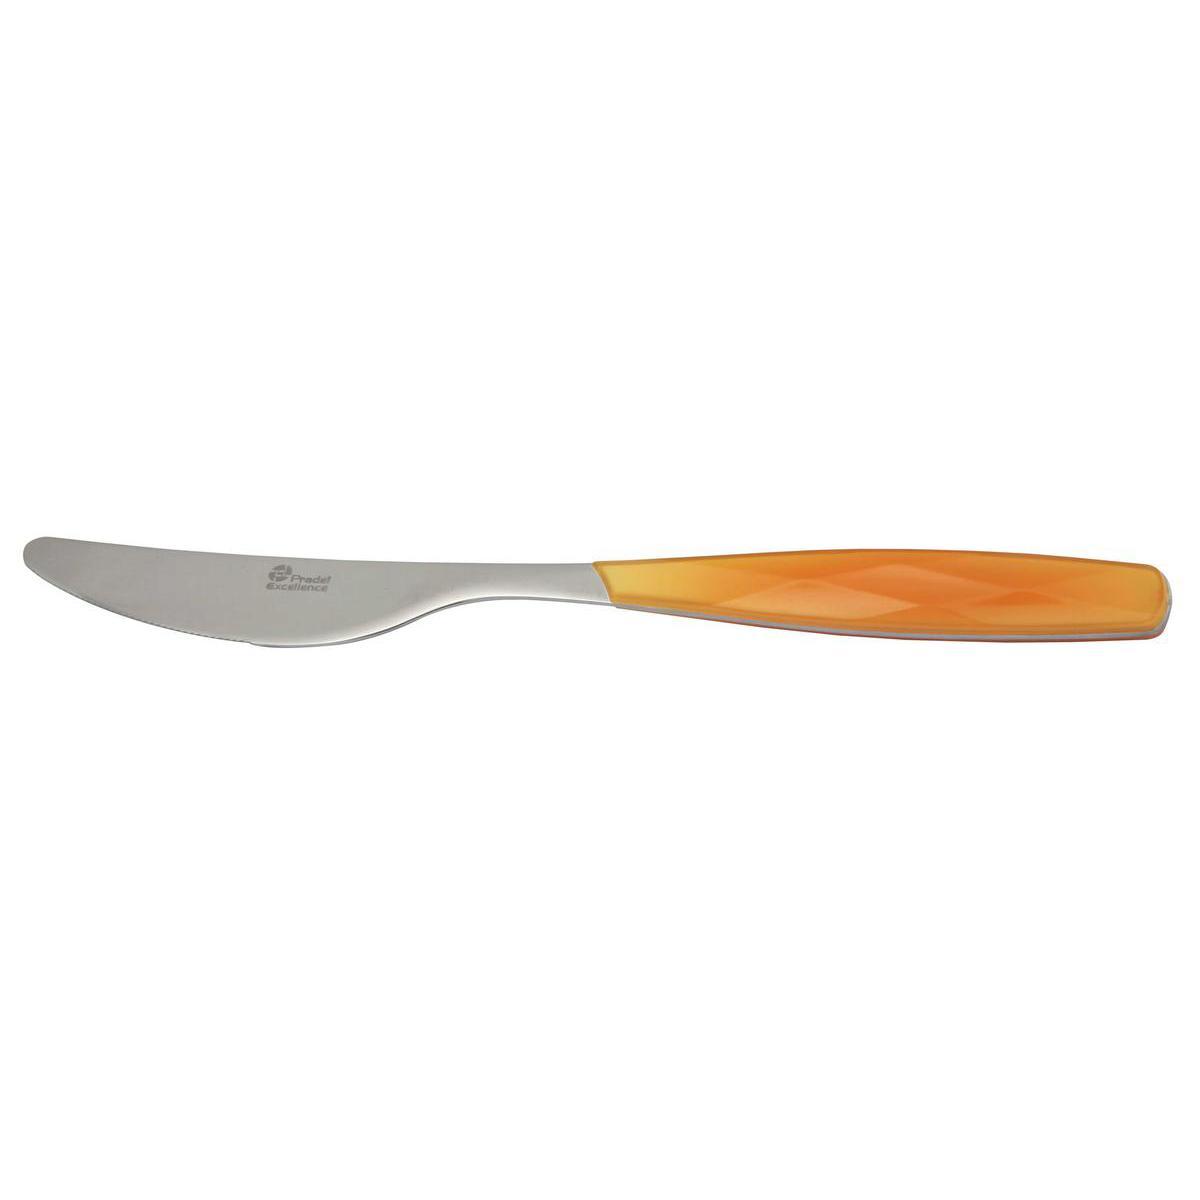 Couteau table excellence - Acier inoxydable - 22,5 cm Orange